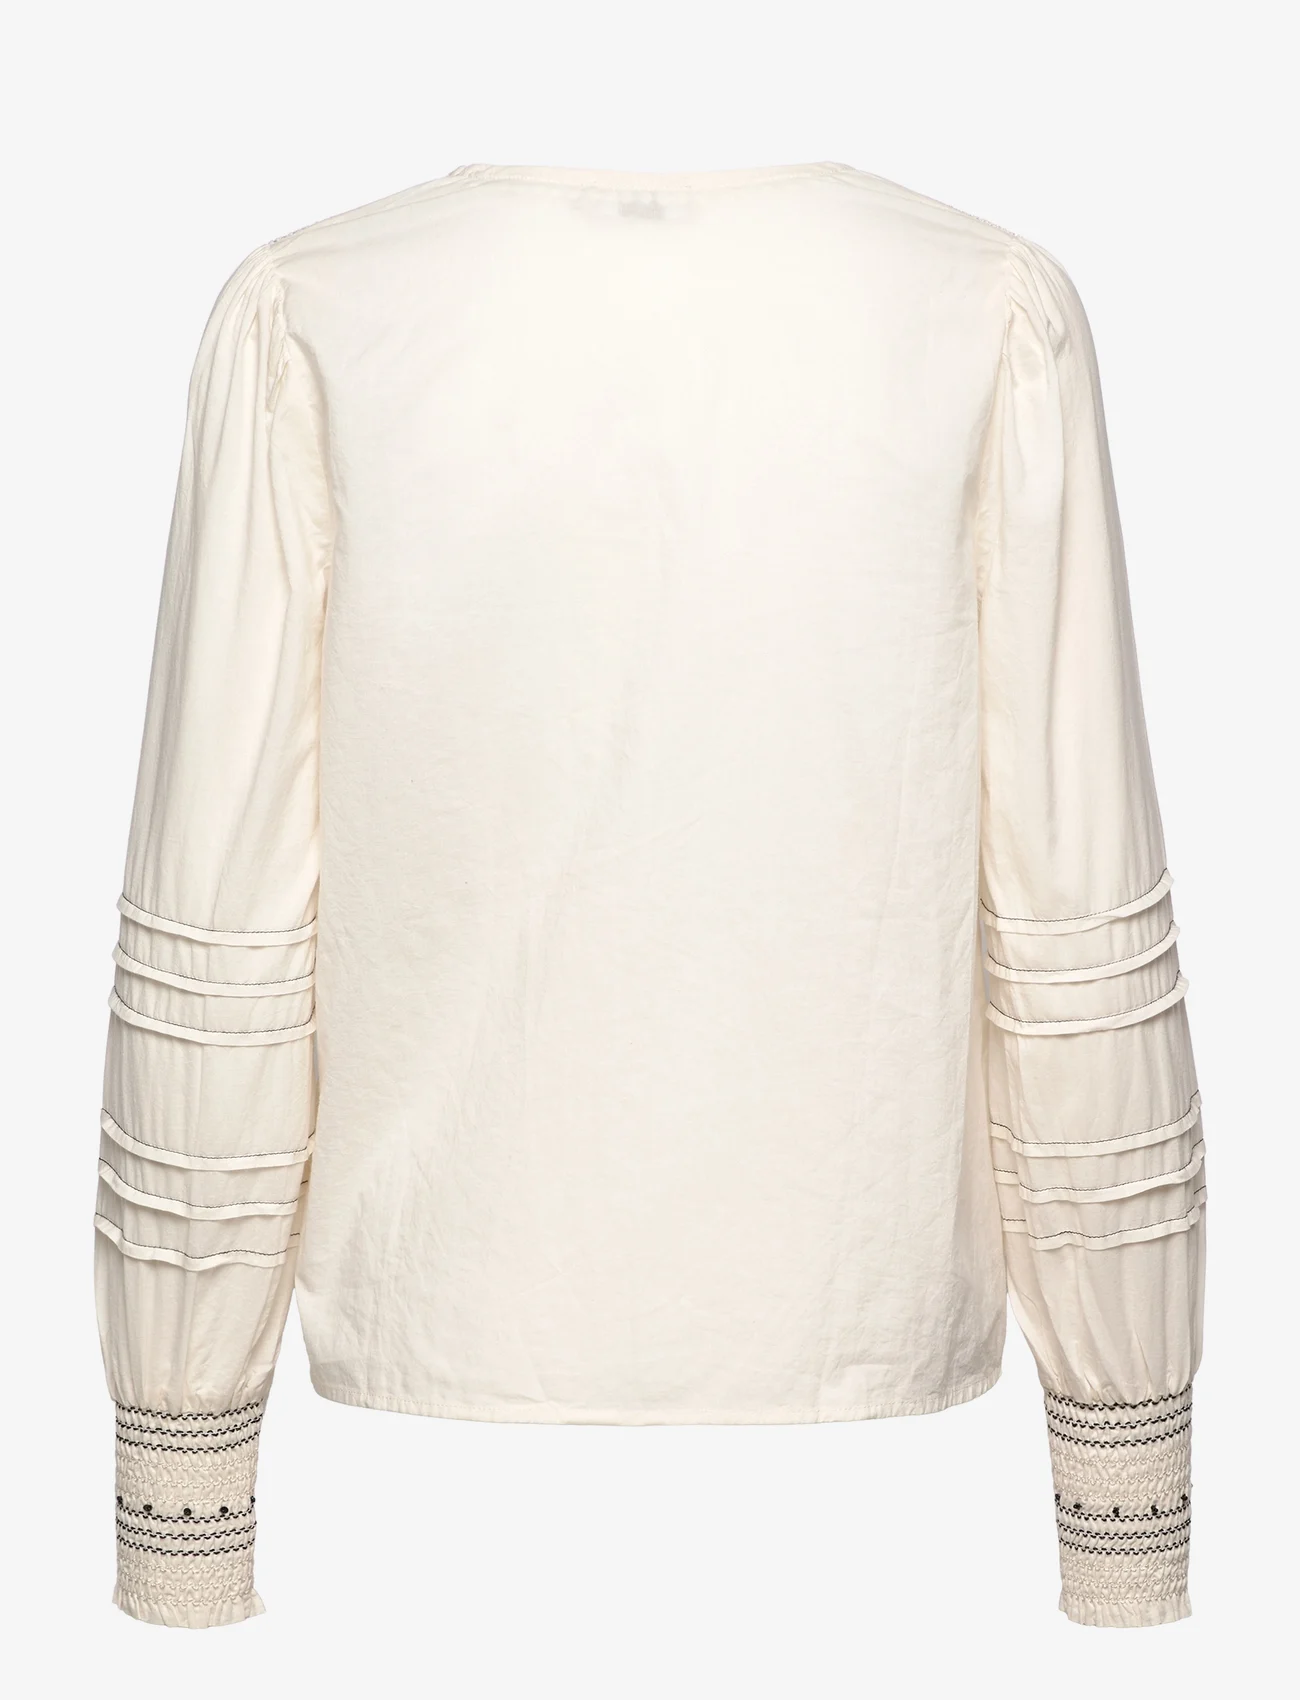 Cream - CRPaulo Blouse - long-sleeved blouses - eggnog - 1